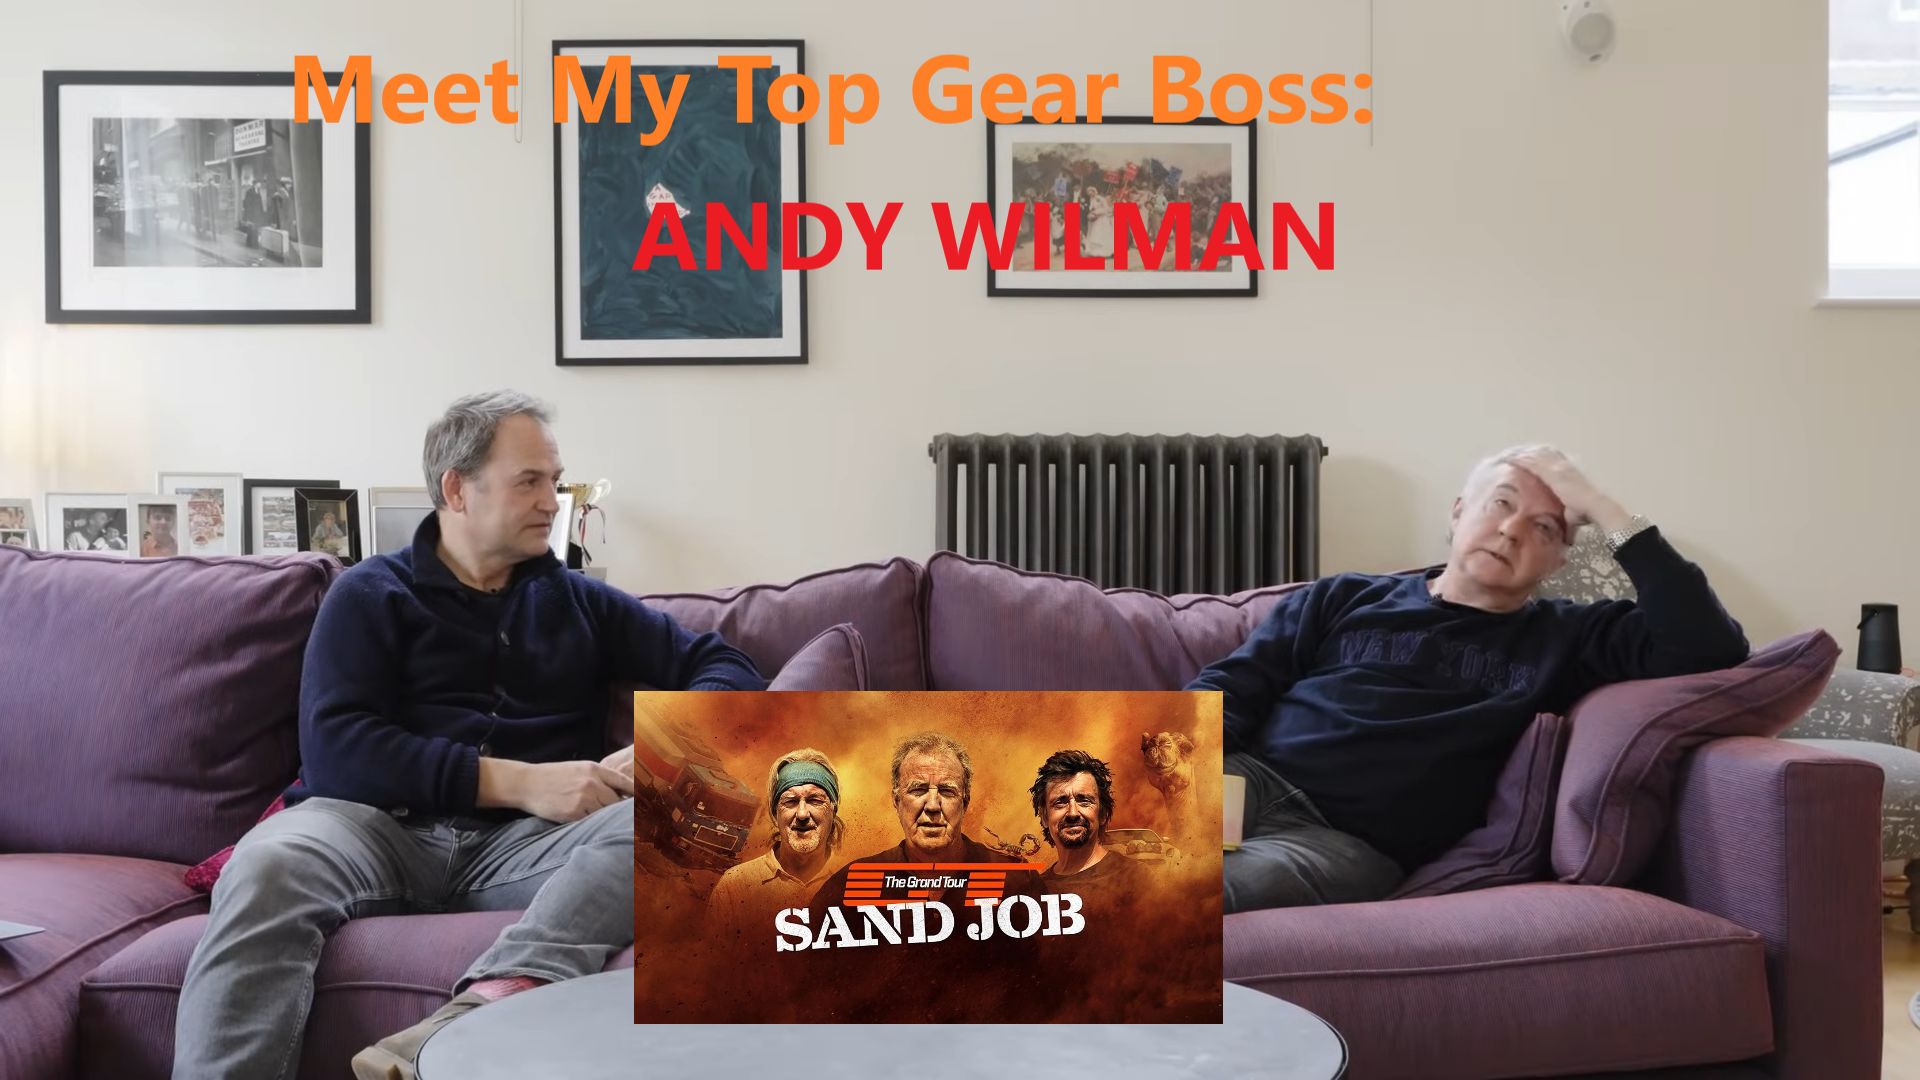 访谈《Top Gear》《Grand Tour》和《Clarkson’s Farm》的执行制片人 安迪·威尔曼 ①